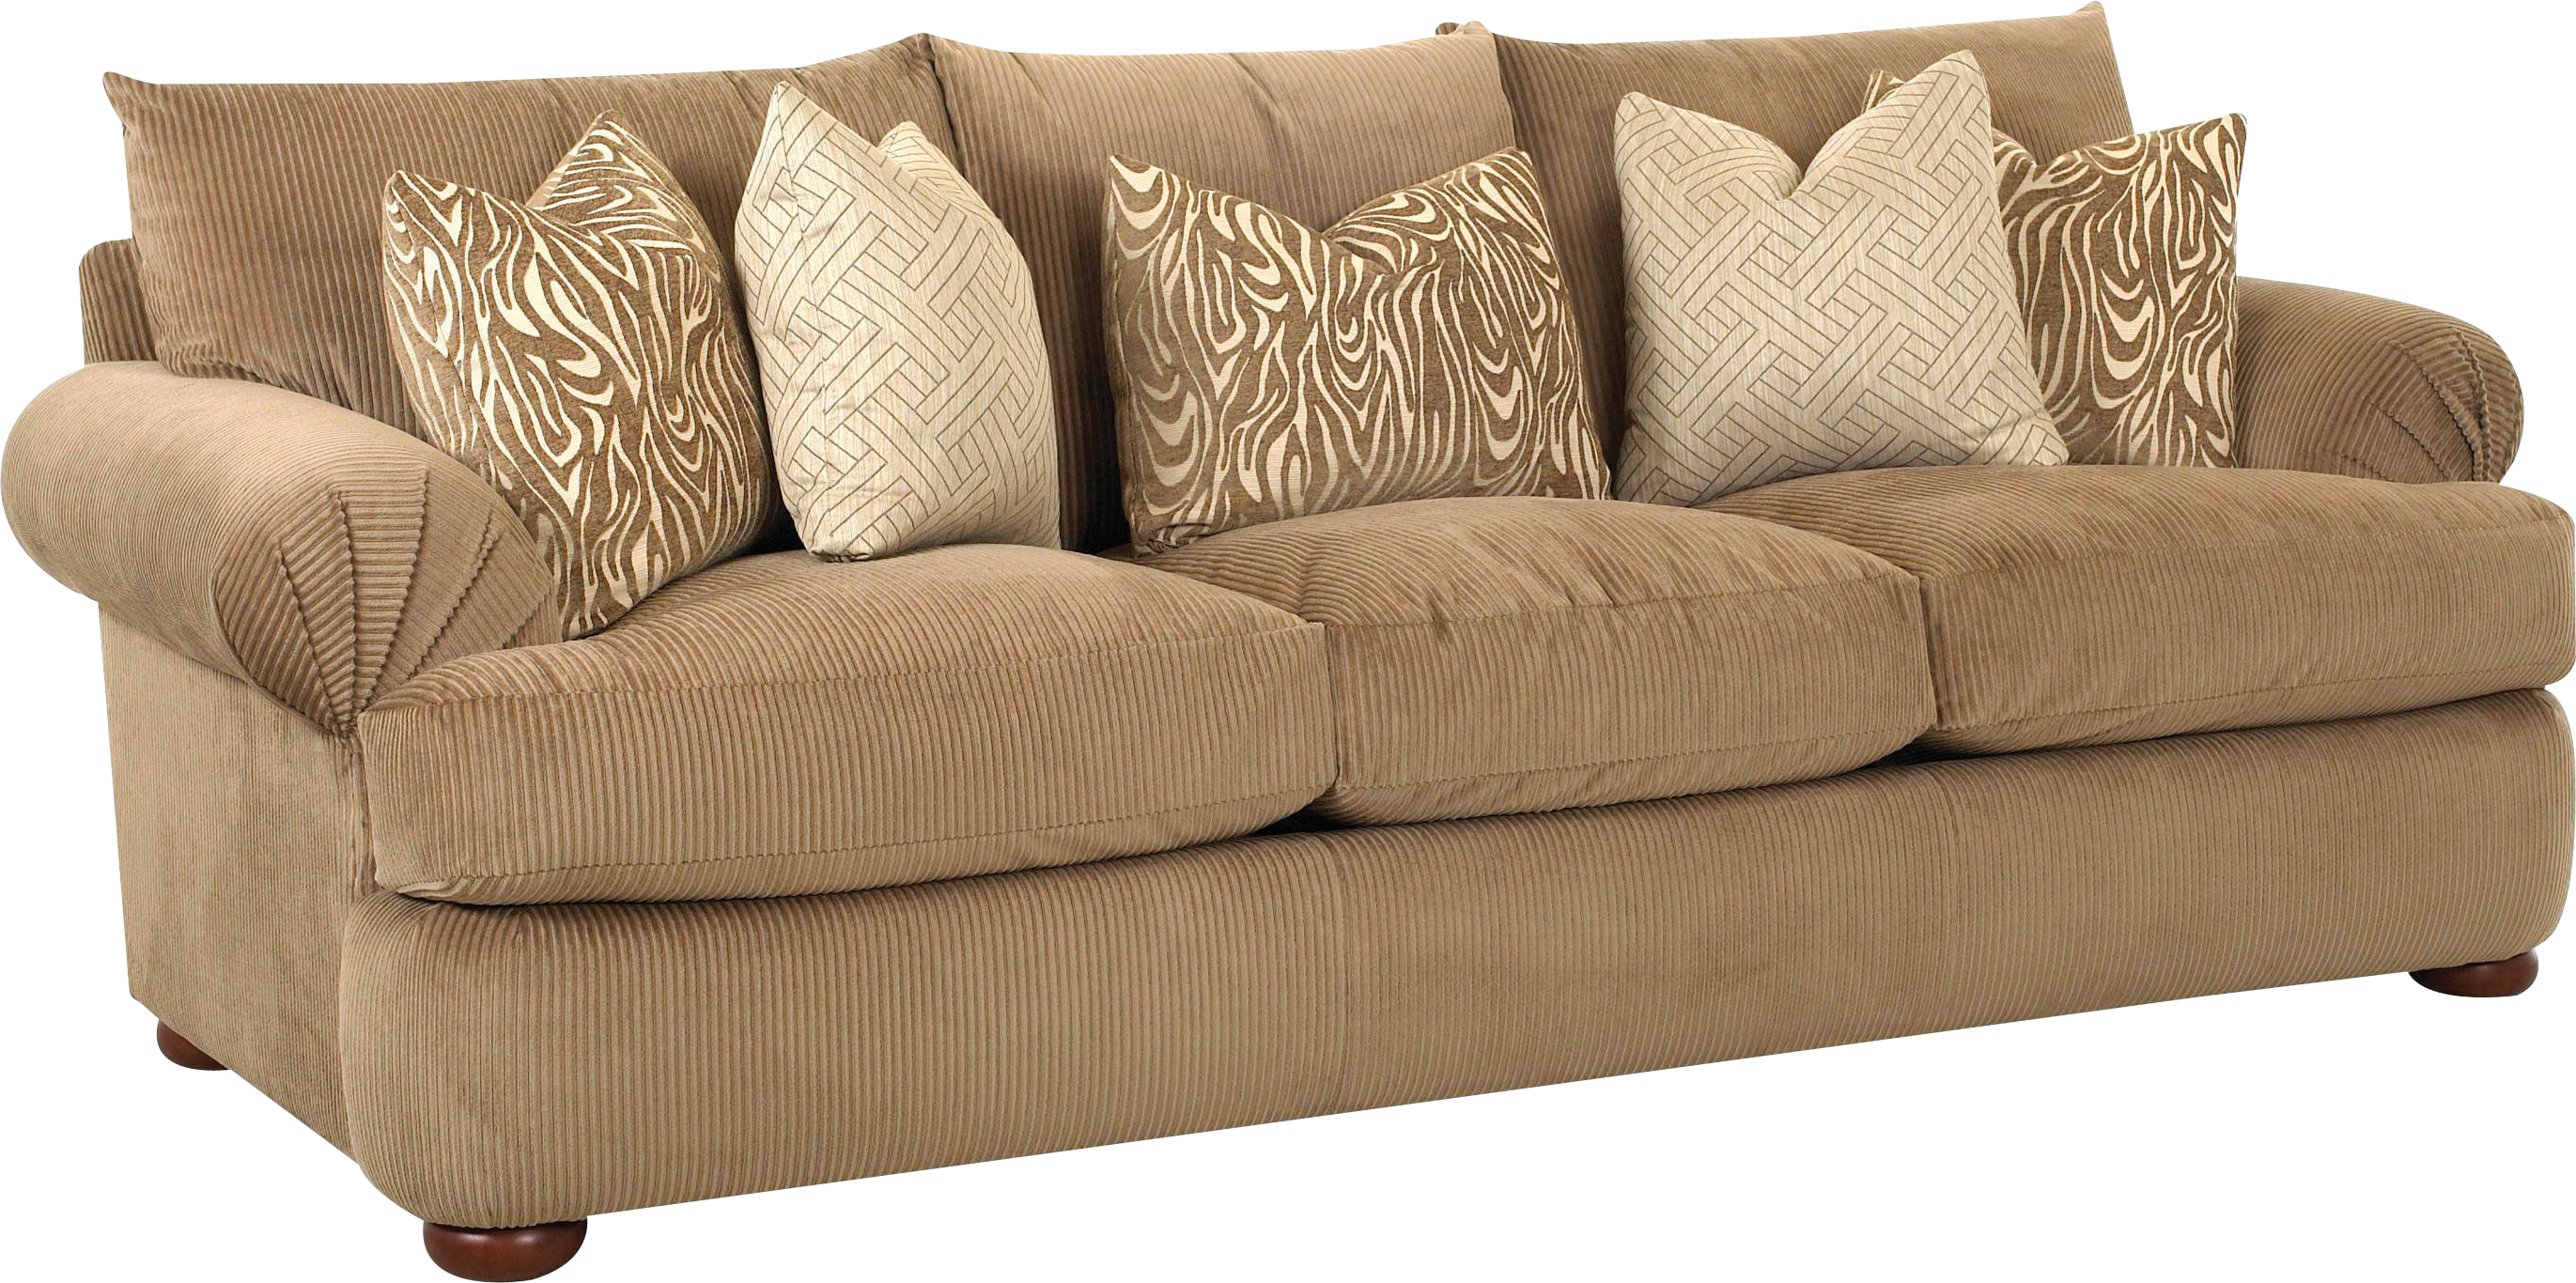 Sofa sofa PNG clipart